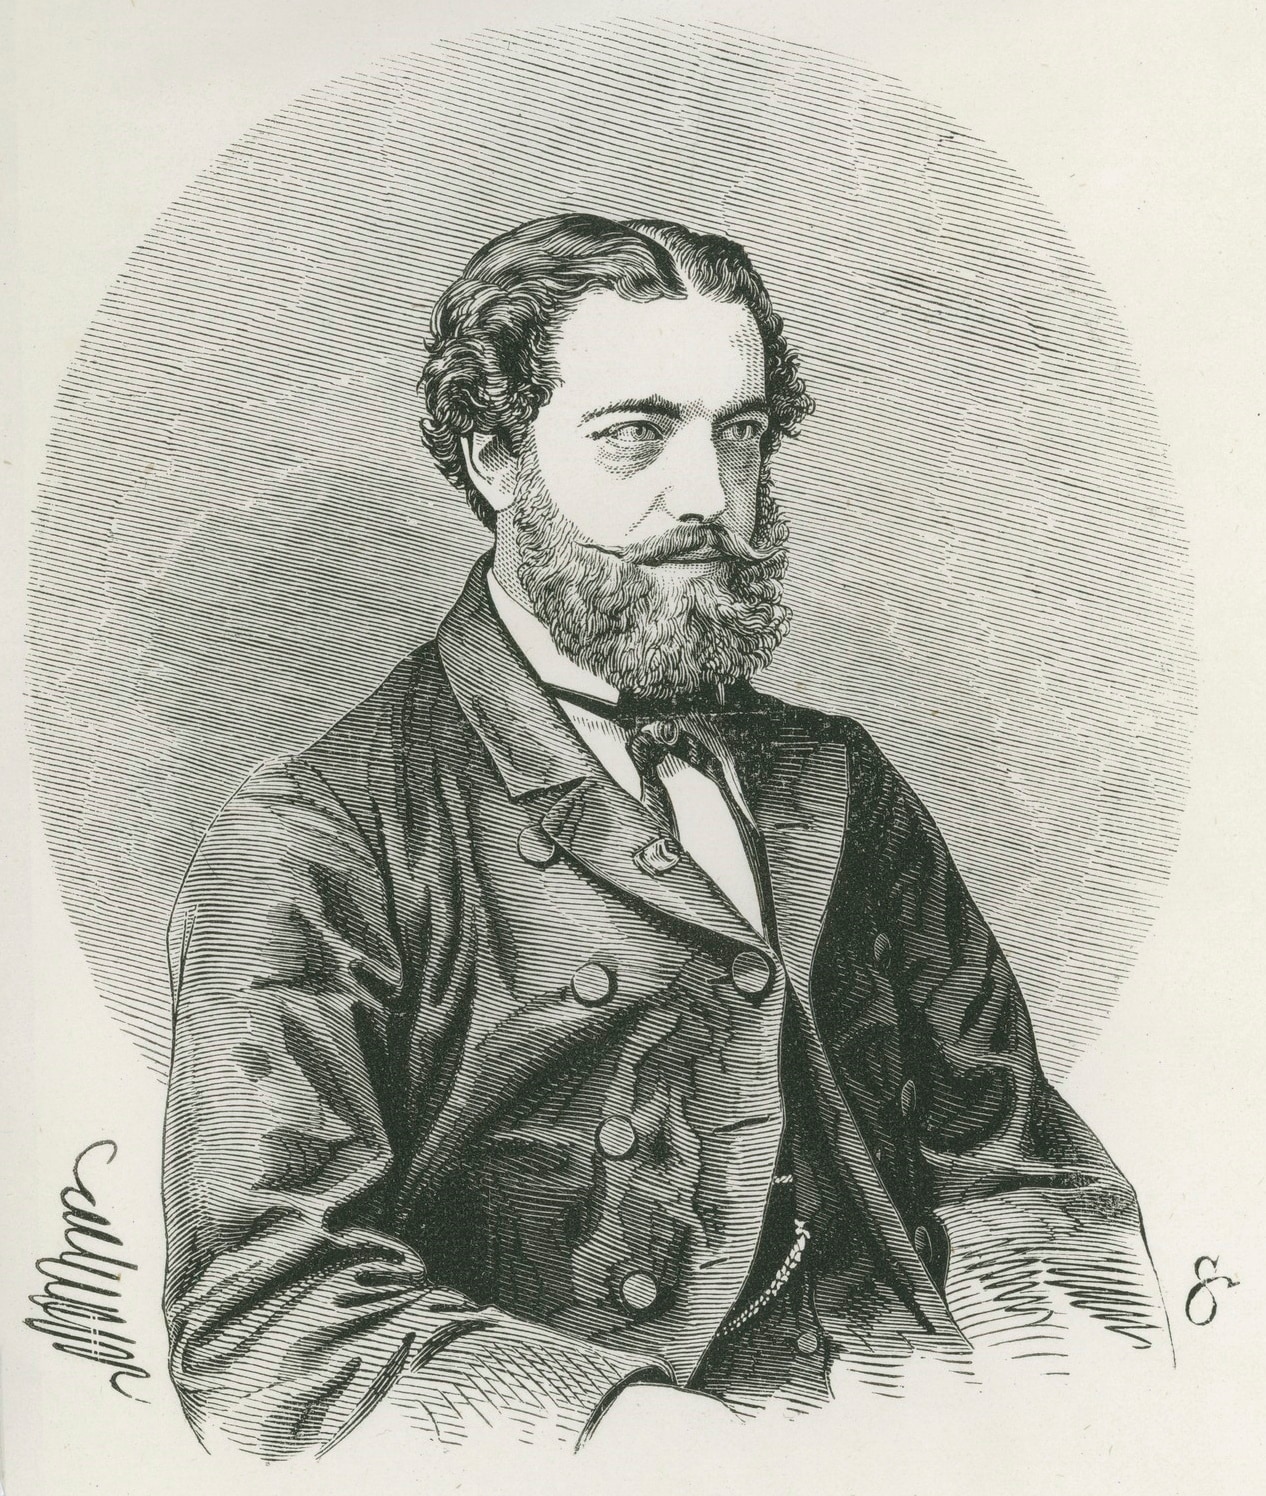 Rene Douay, May 1862 (Samuel Calvert, engraver)